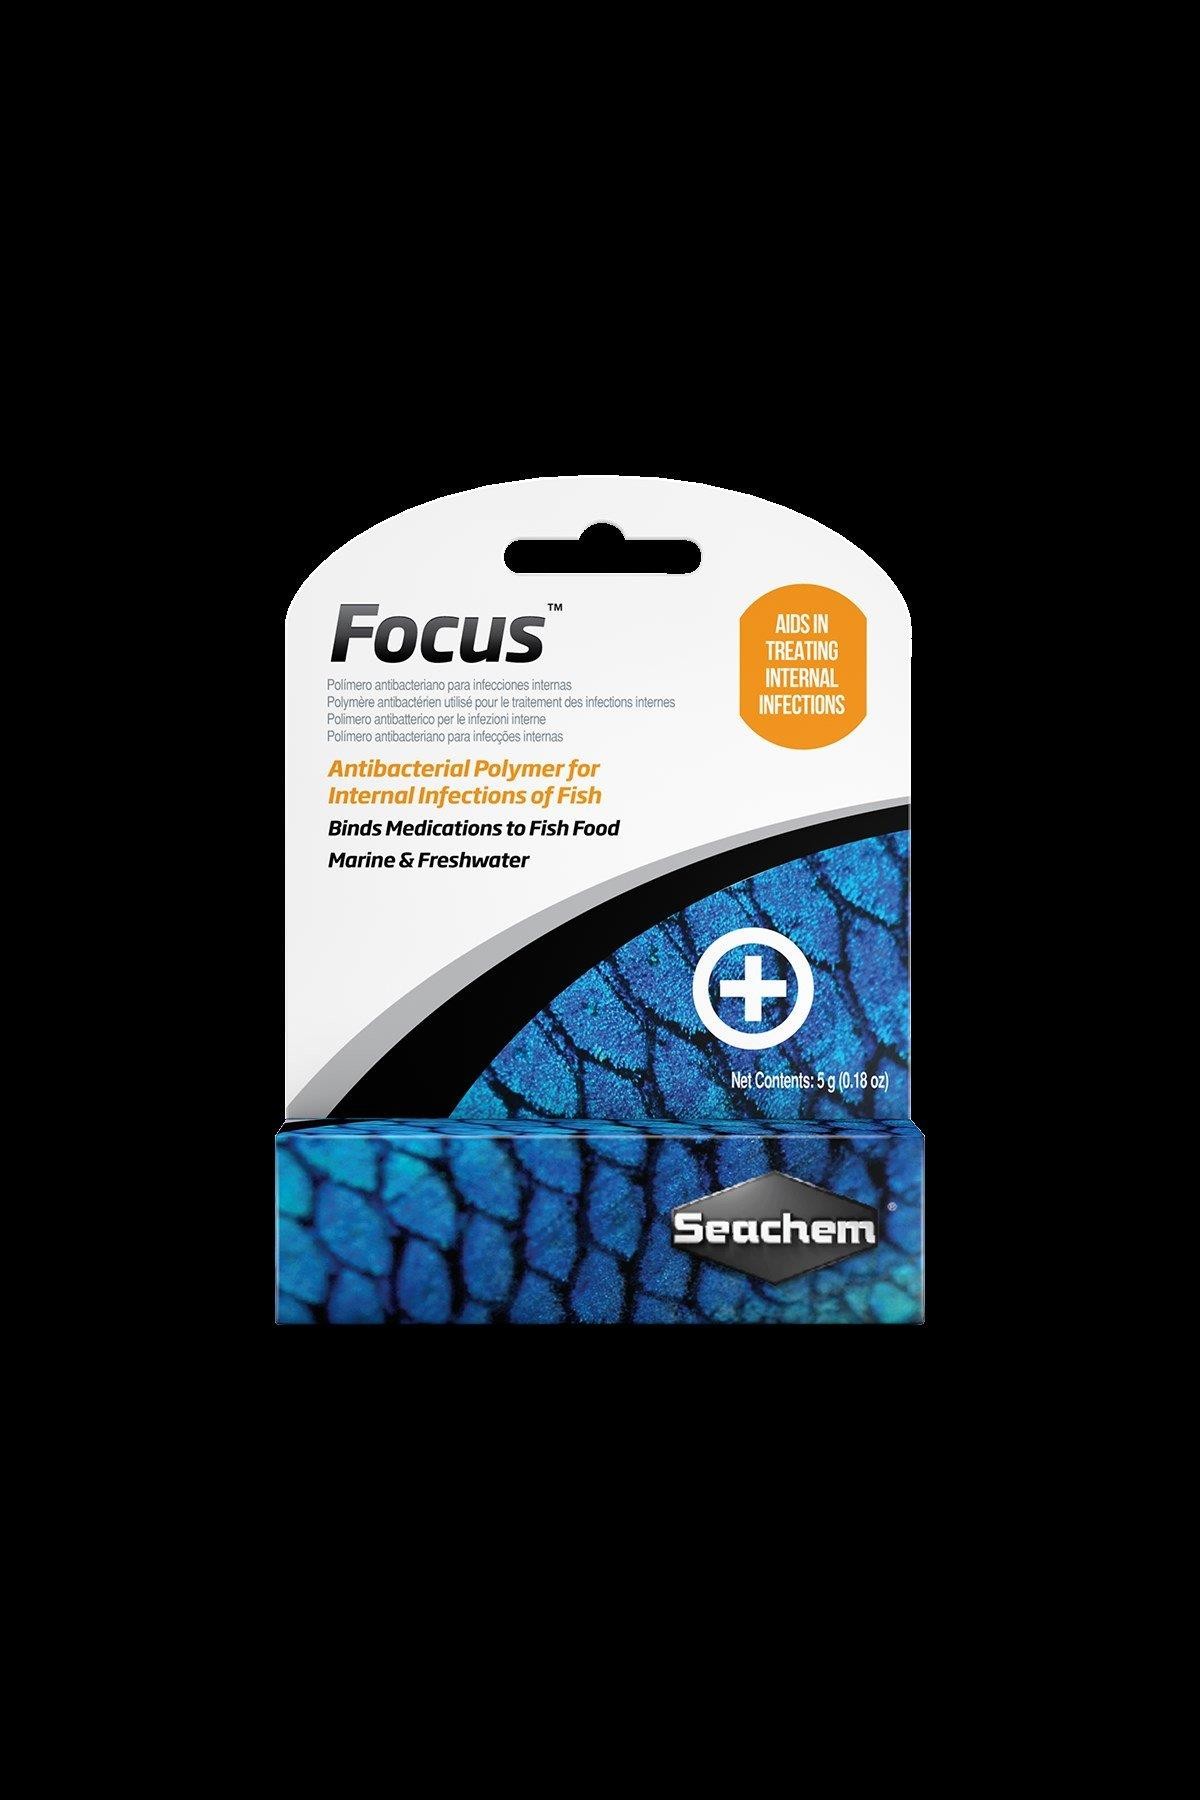 Seachem Focus Balık İlacı 5 Gr